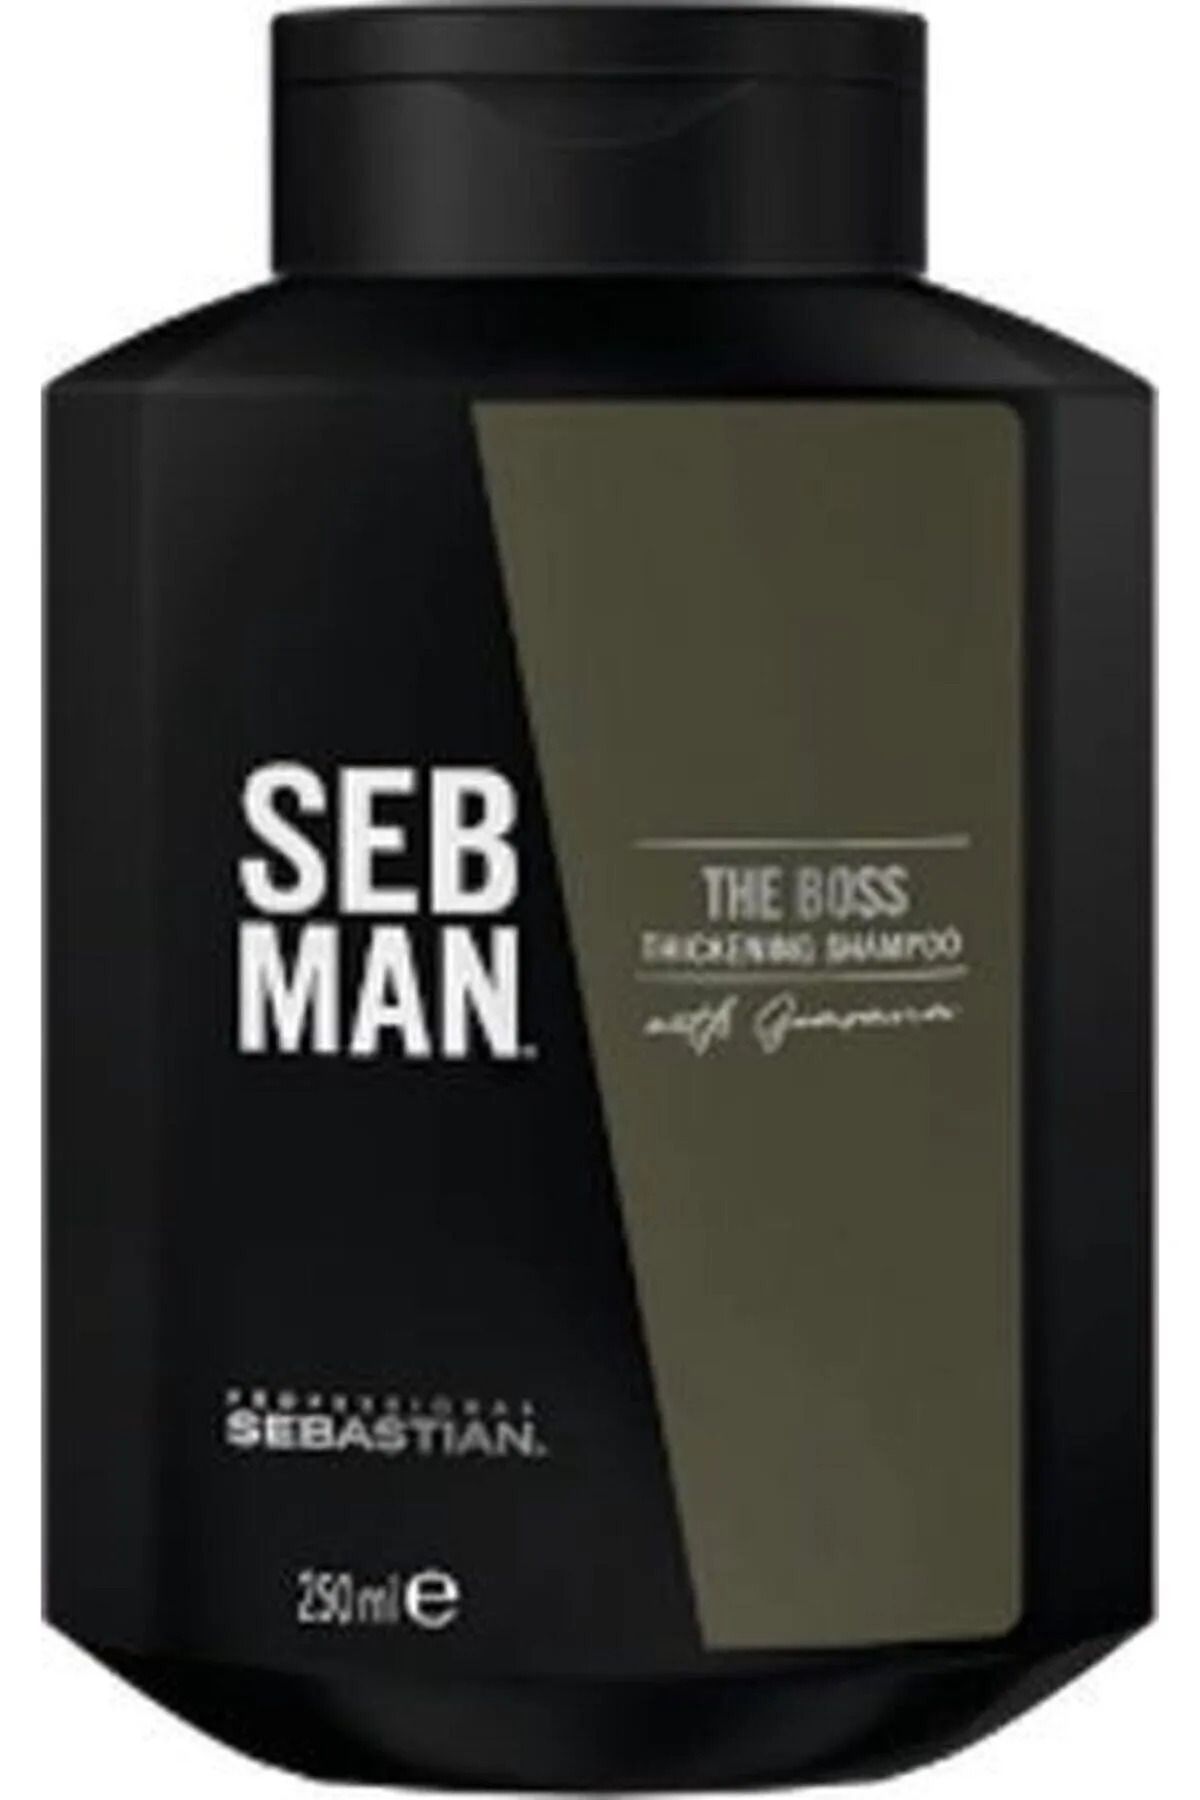 Sebastian Seb Man The Boss Hair Thickening Shampoo 250ml-KE